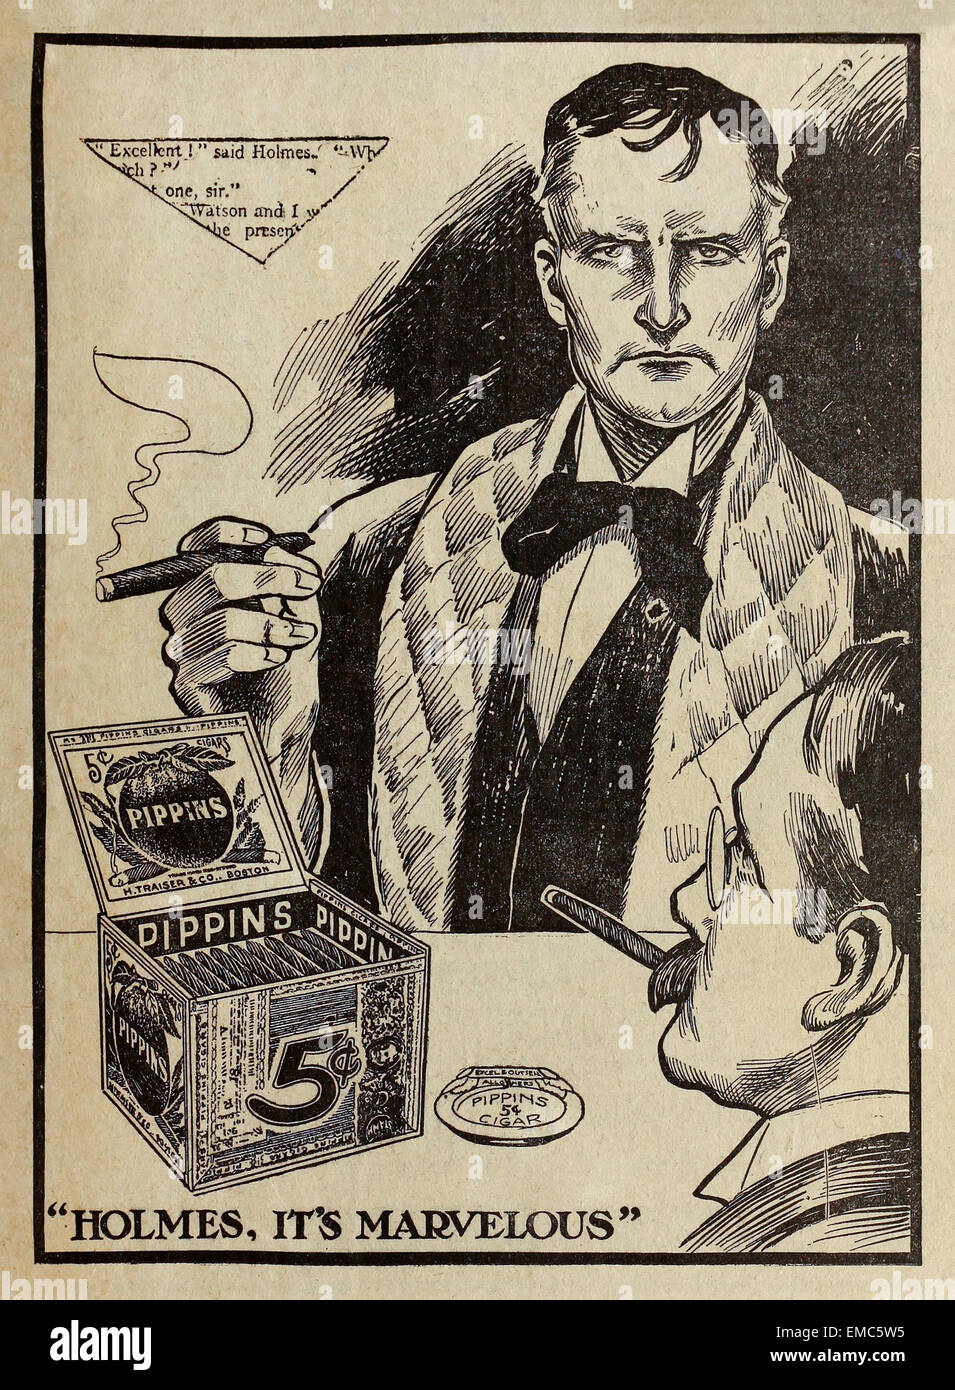 "Holmes, c'est merveilleux' Pippins imprimer cigare annonce avec Sherlock Holmes et le Dr Watson. À partir d'une série de livrets distribués avec le Boston Post dimanche en 1911. Pippins cigares ont été fabriqués par Traiser & Co. Inc. Boston. Sherlock est appelée à ressembler à l'acteur William Gillette qui dépeint le détective sur scène dans une tournée très réussie autour de l'UK et US. Banque D'Images